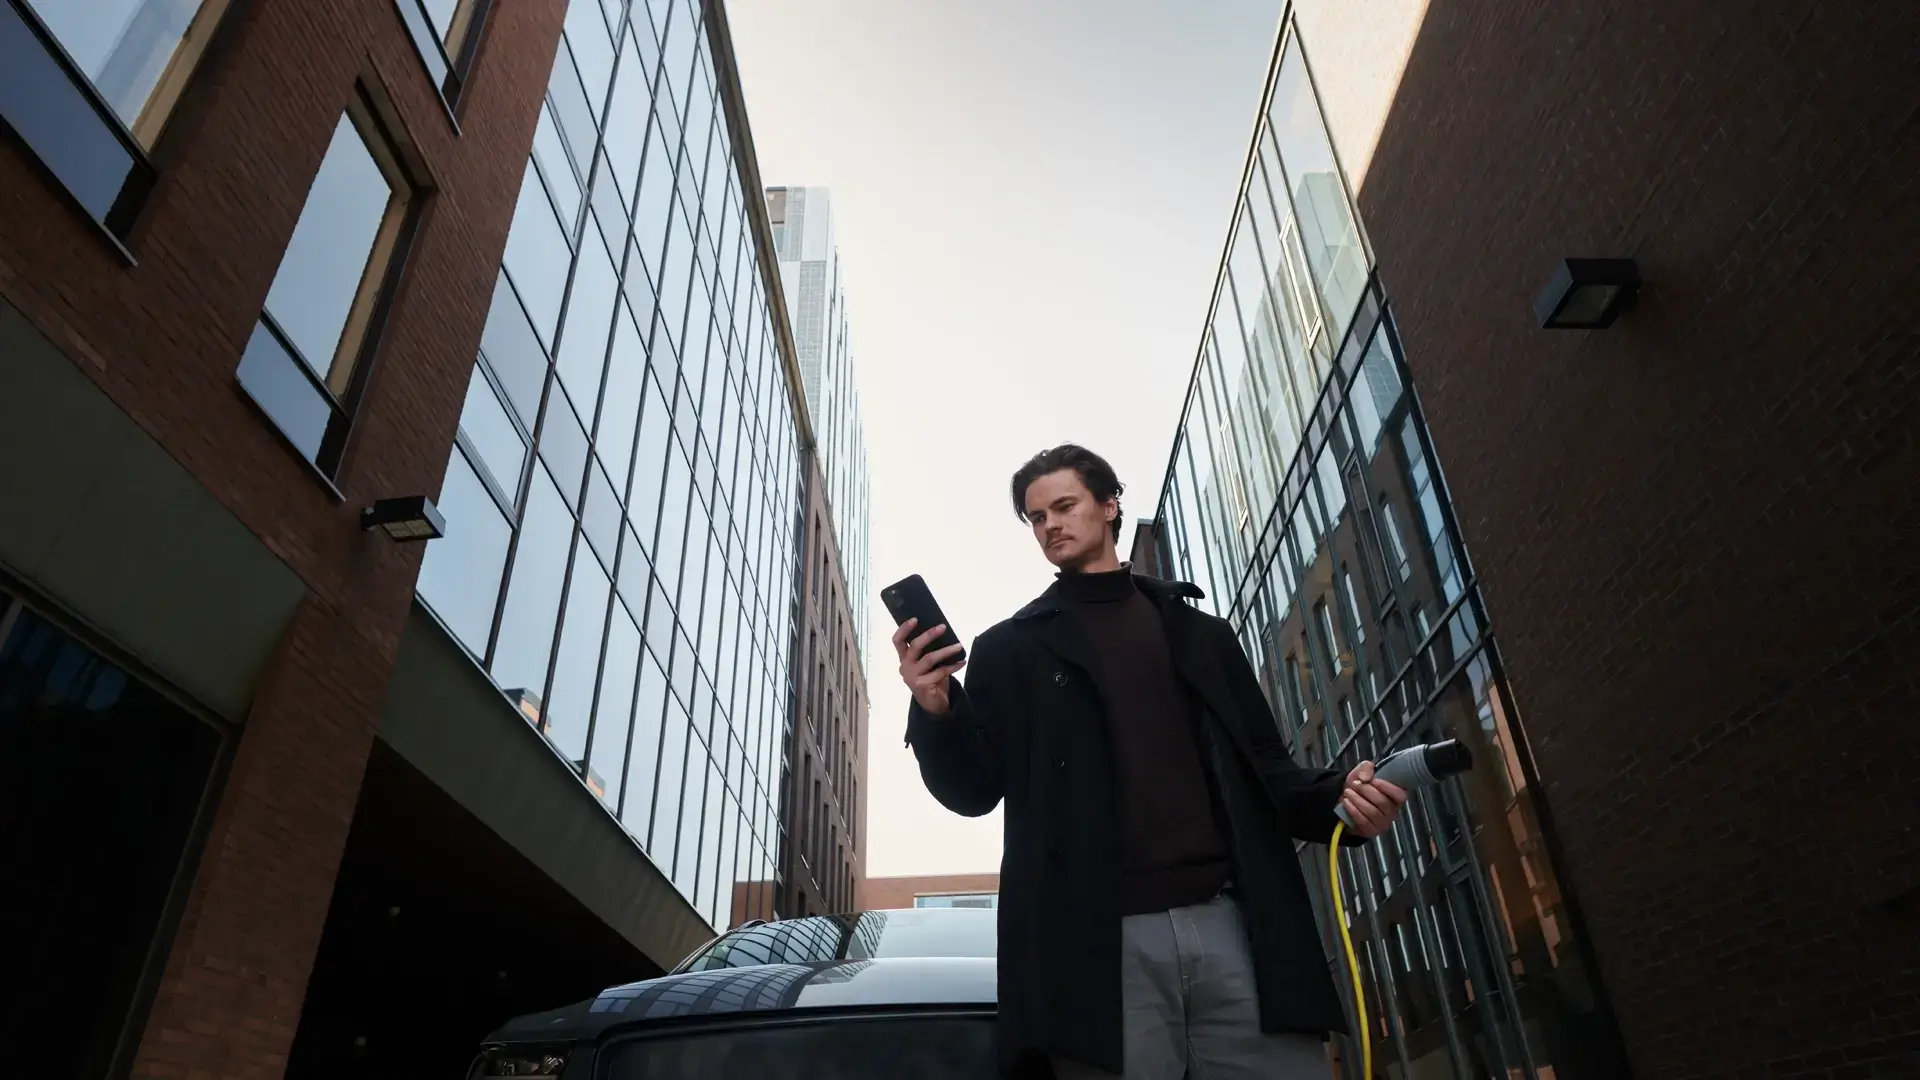 Mann hält smartphone in der Hand und Ladekabel für Ladestation in der anderen im urbanen Gebiet